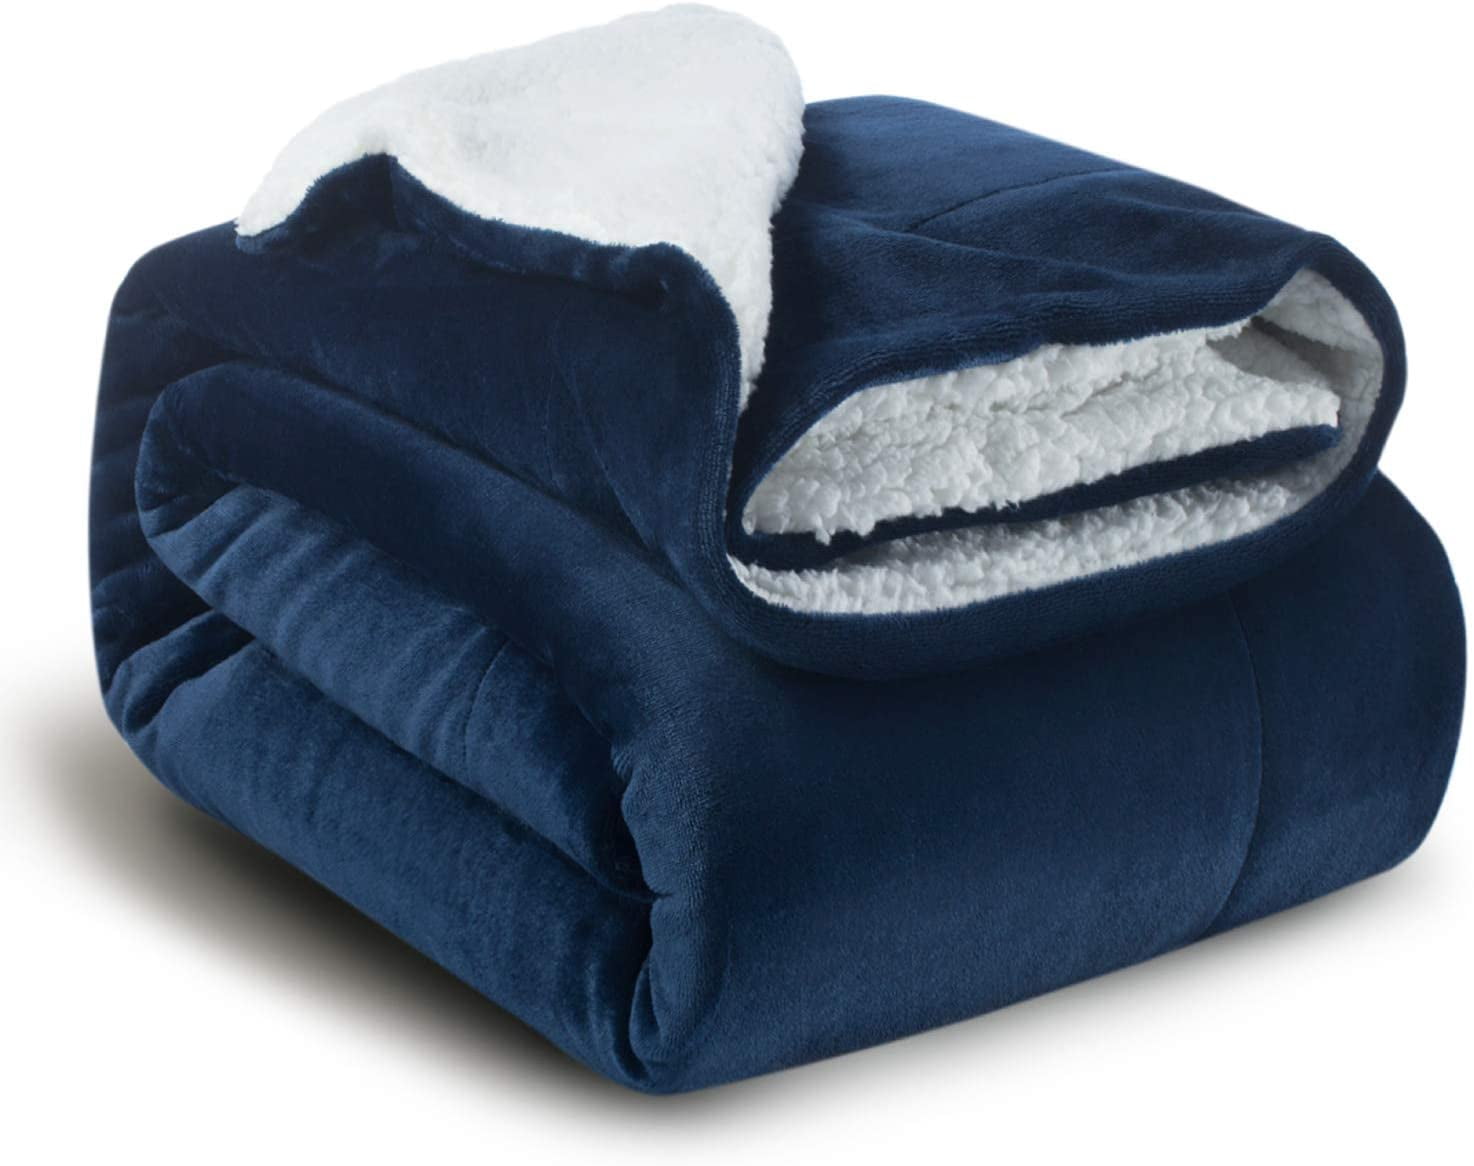 Bedsure Sherpa Fleece Blanket Twin Size Navy Blue Plush Blanket Fuzzy